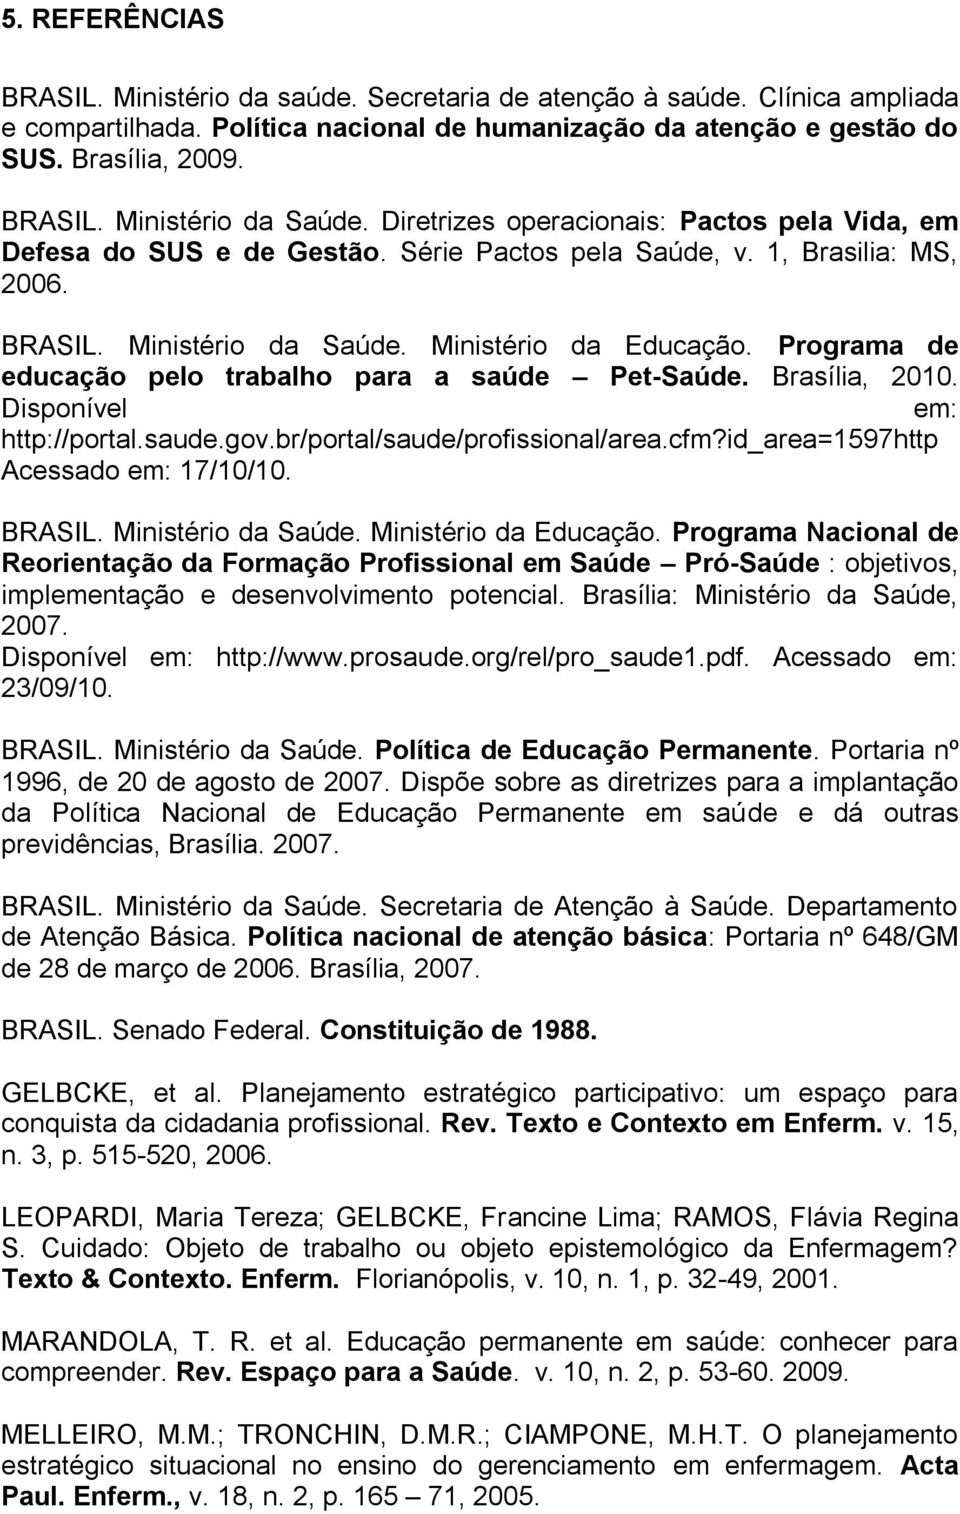 Saúde. Ministério da. Programa de educação pelo trabalho para a saúde Pet-Saúde. Brasília, 2010. Disponível em: http://portal.saude.gov.br/portal/saude/profissional/area.cfm?